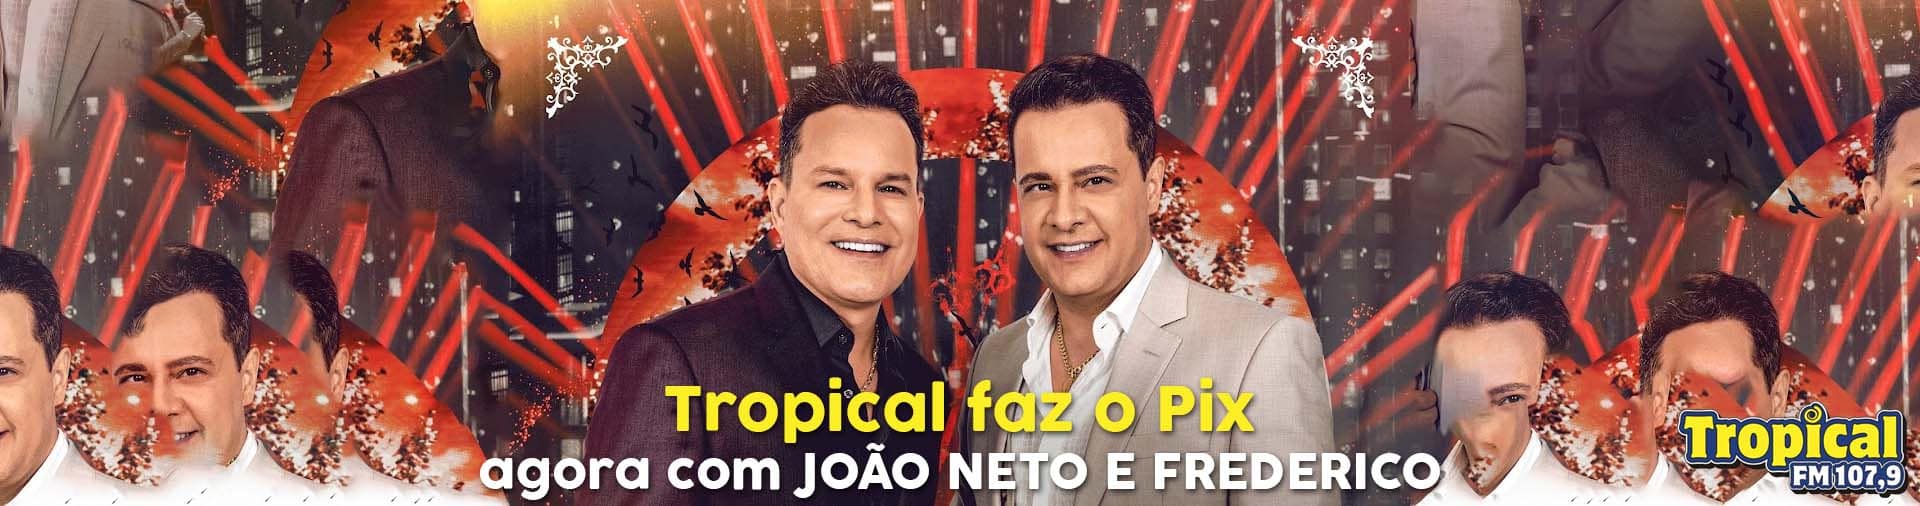 Banner Tropical faz o Pix com João Neto e Frederico